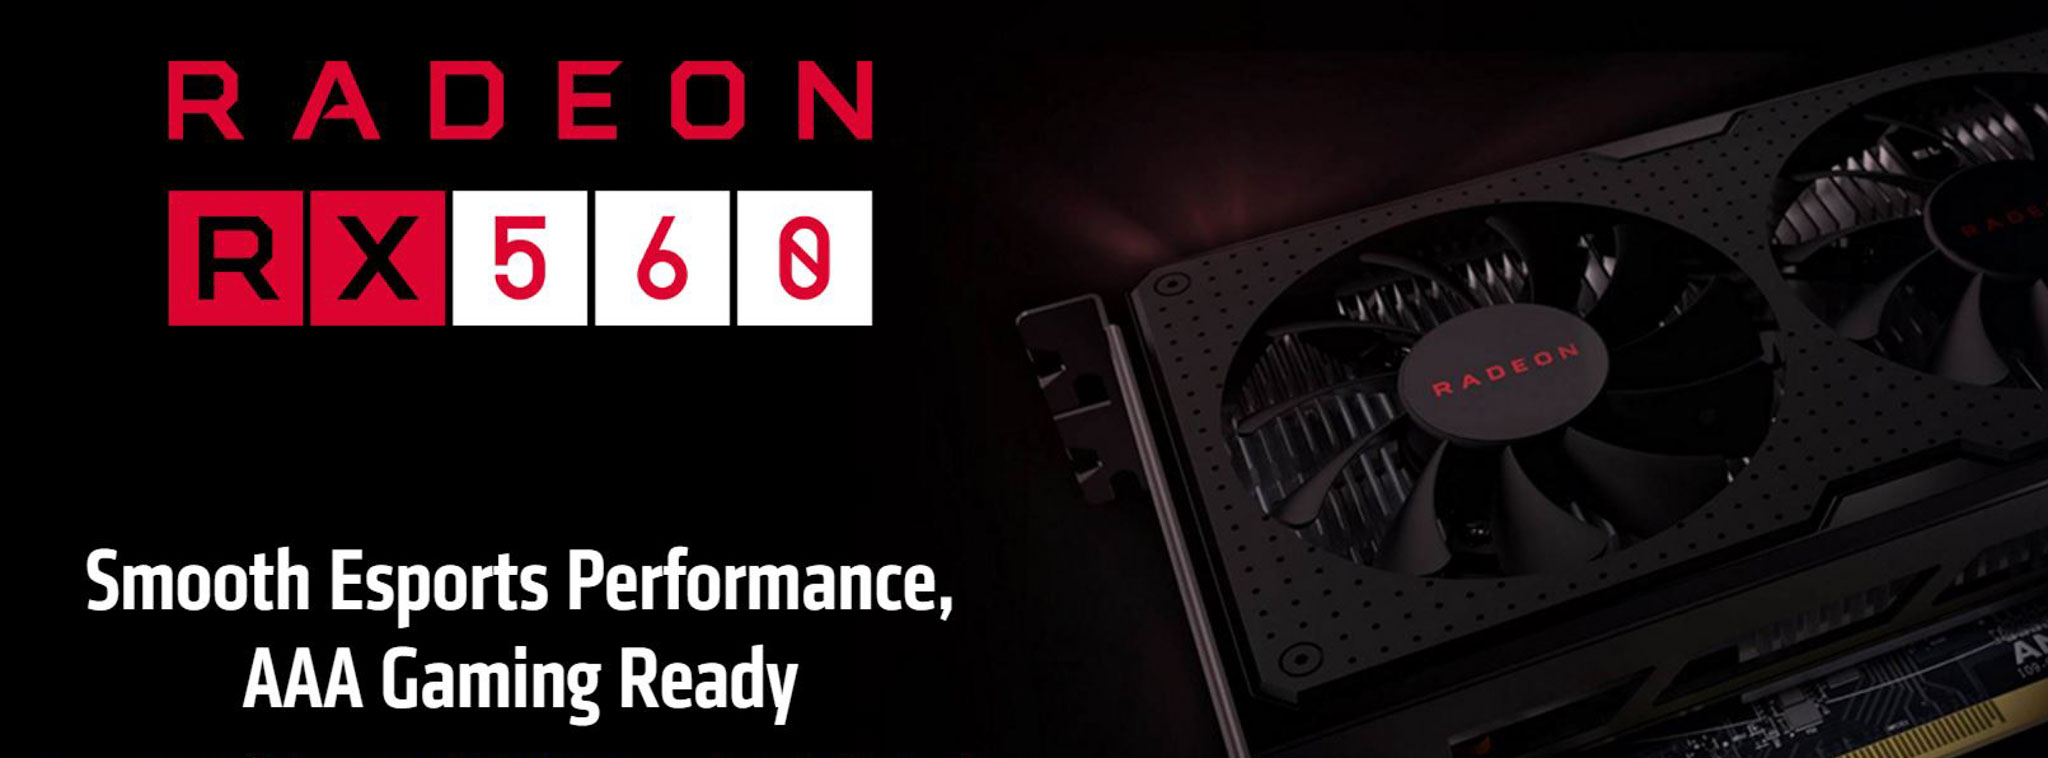 AMD chính thức xác nhận Radeon RX 560 có 2 phiên bản, đang làm việc với đối tác để tránh nhầm lẫn